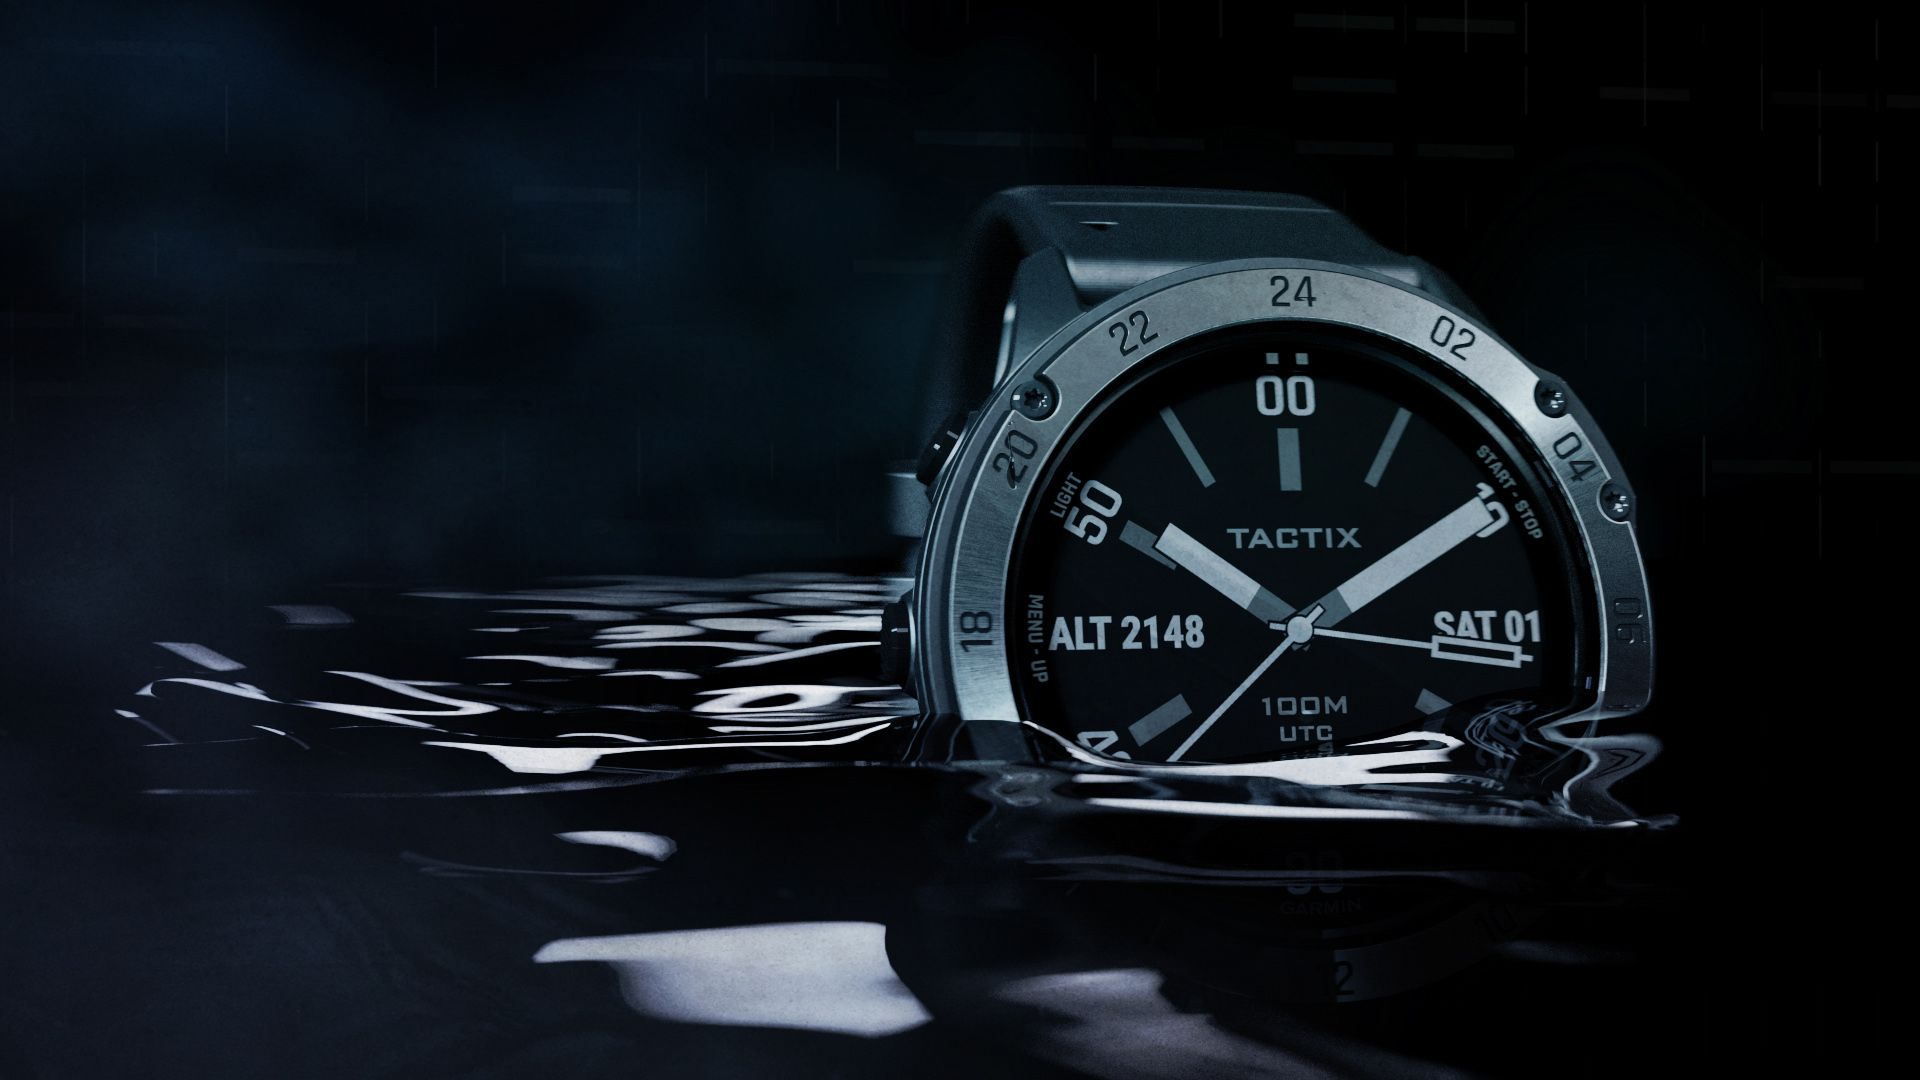 Garmin ra mắt đồng hồ thông minh Tactix Delta được thiết kế với tiêu chuẩn quân đội